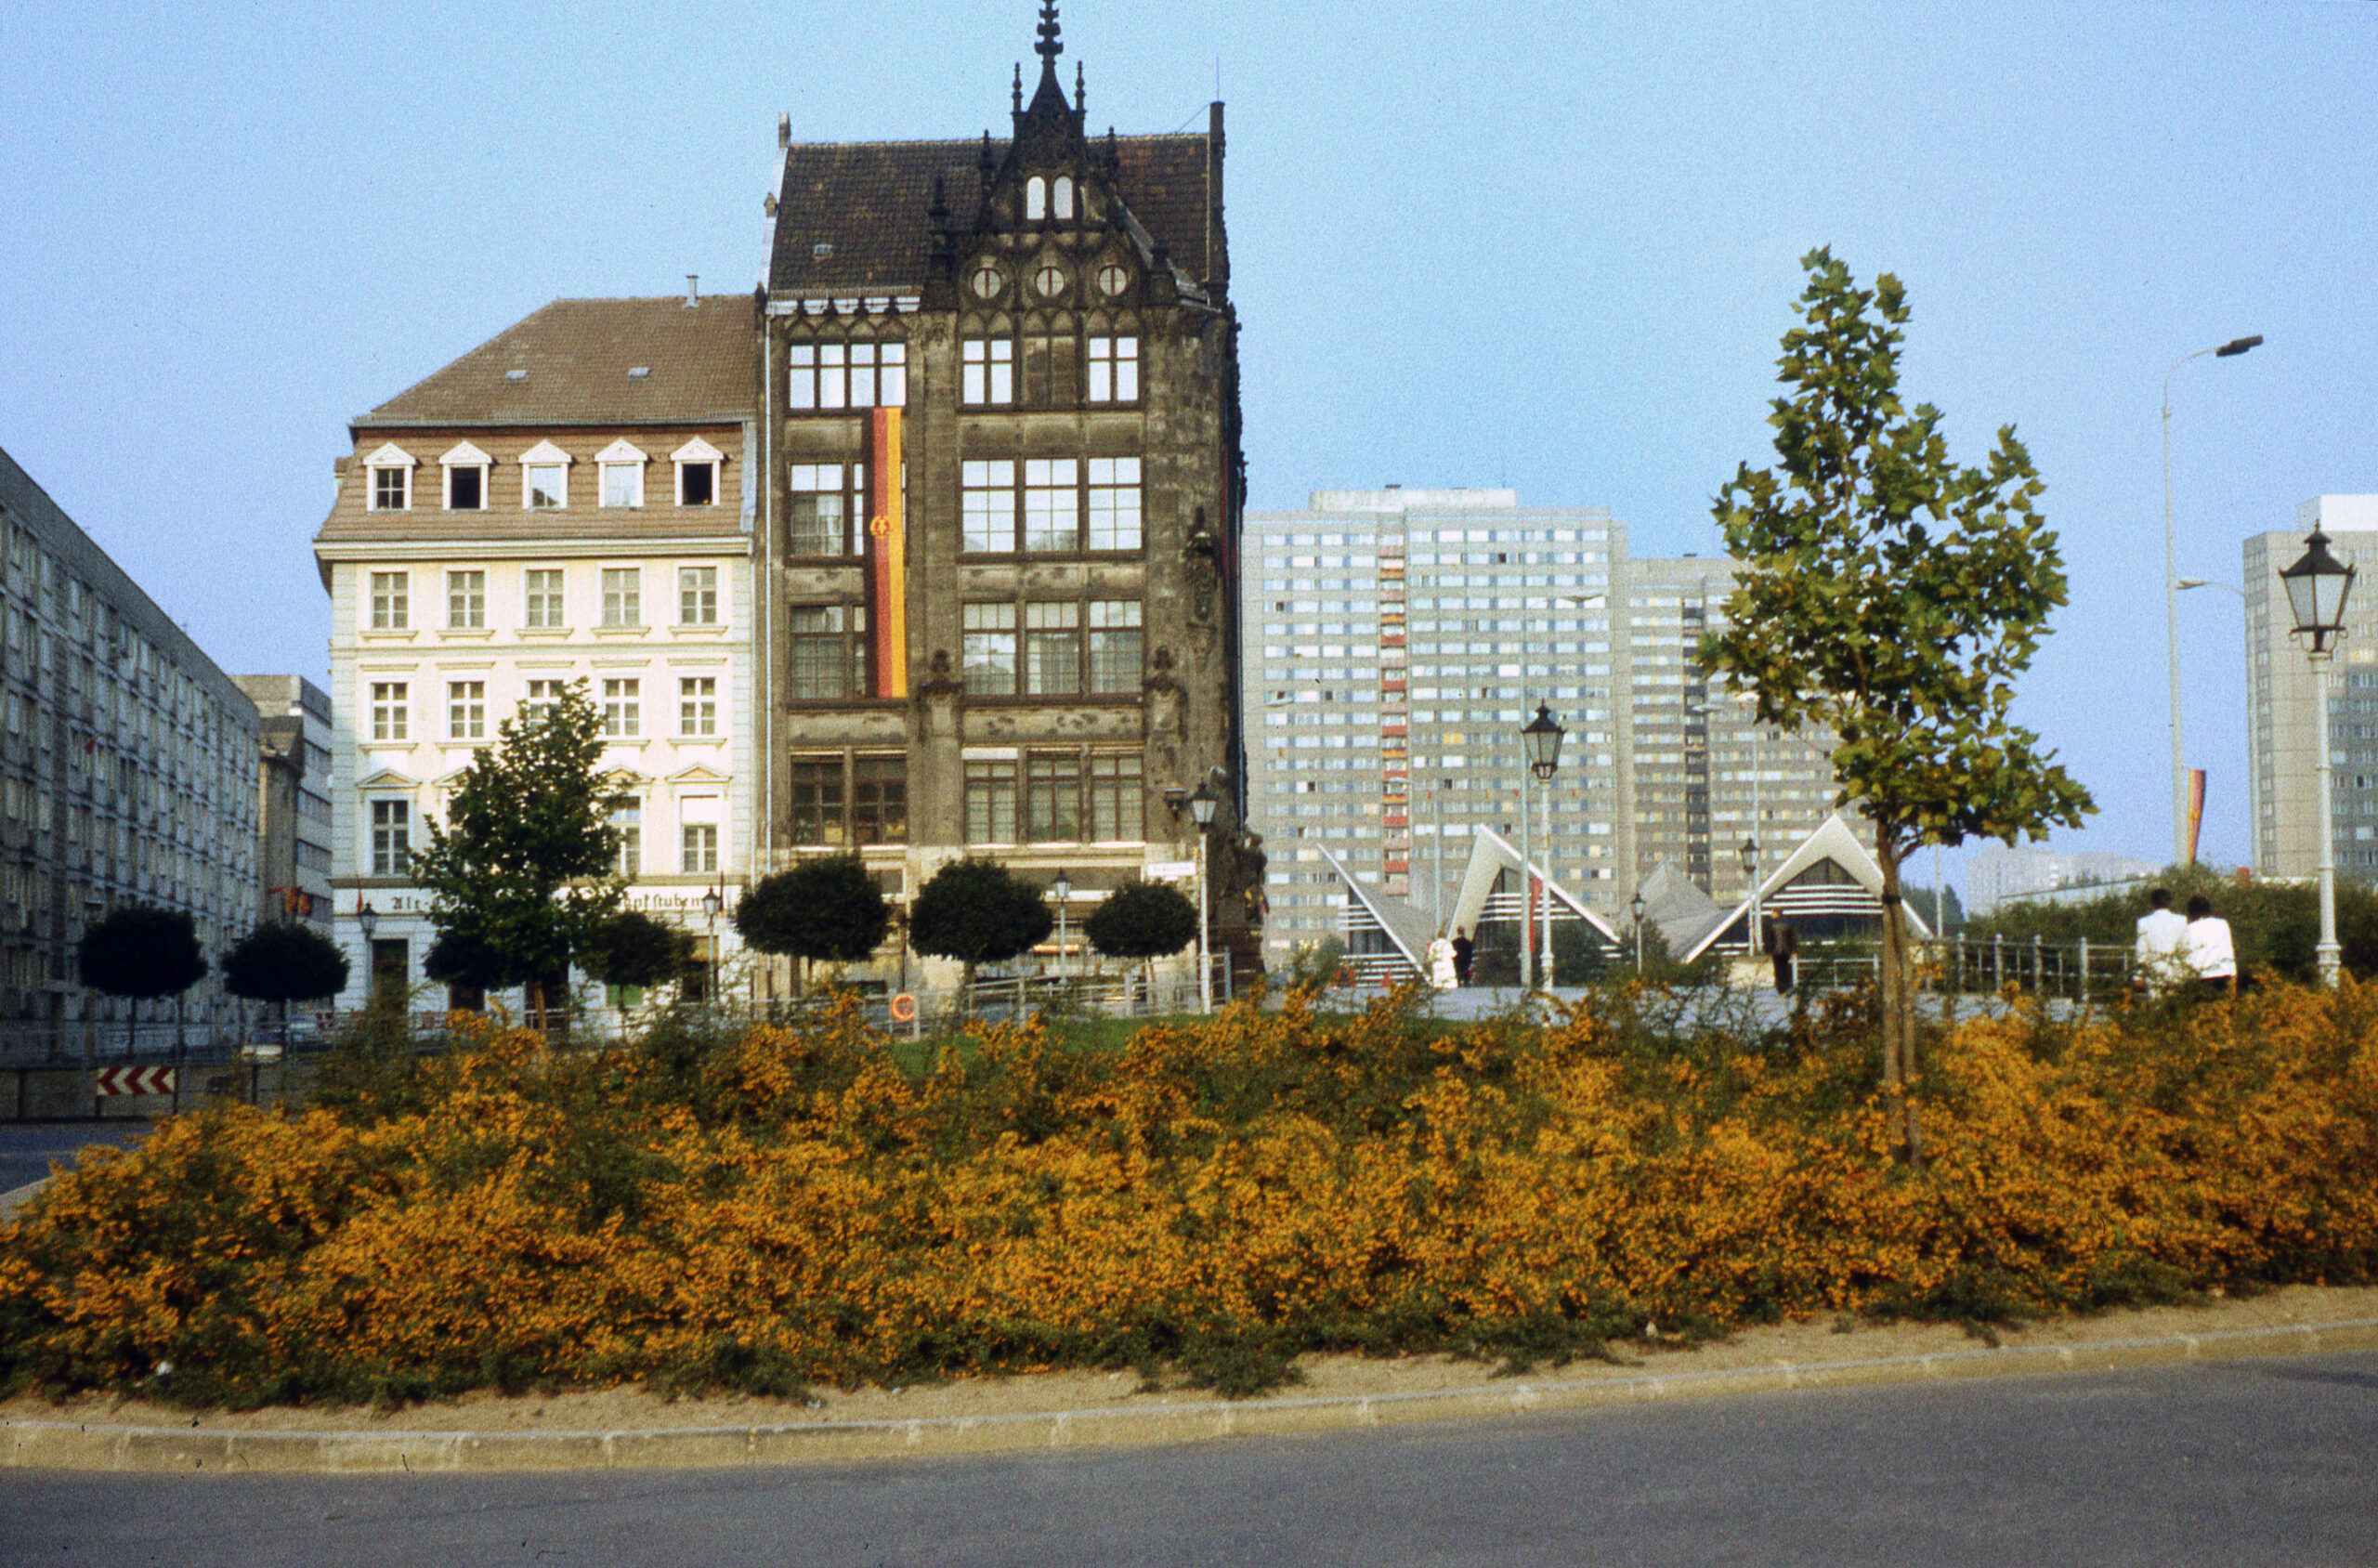 Spittelmarkt mit Juwel-Palais Kleine Getraudenstraße, erbaut von Max Jacob und Georg Roensch in den Jahren 1894 bis 1898. Foto: Imago/Snapshot Photography/K. Krause